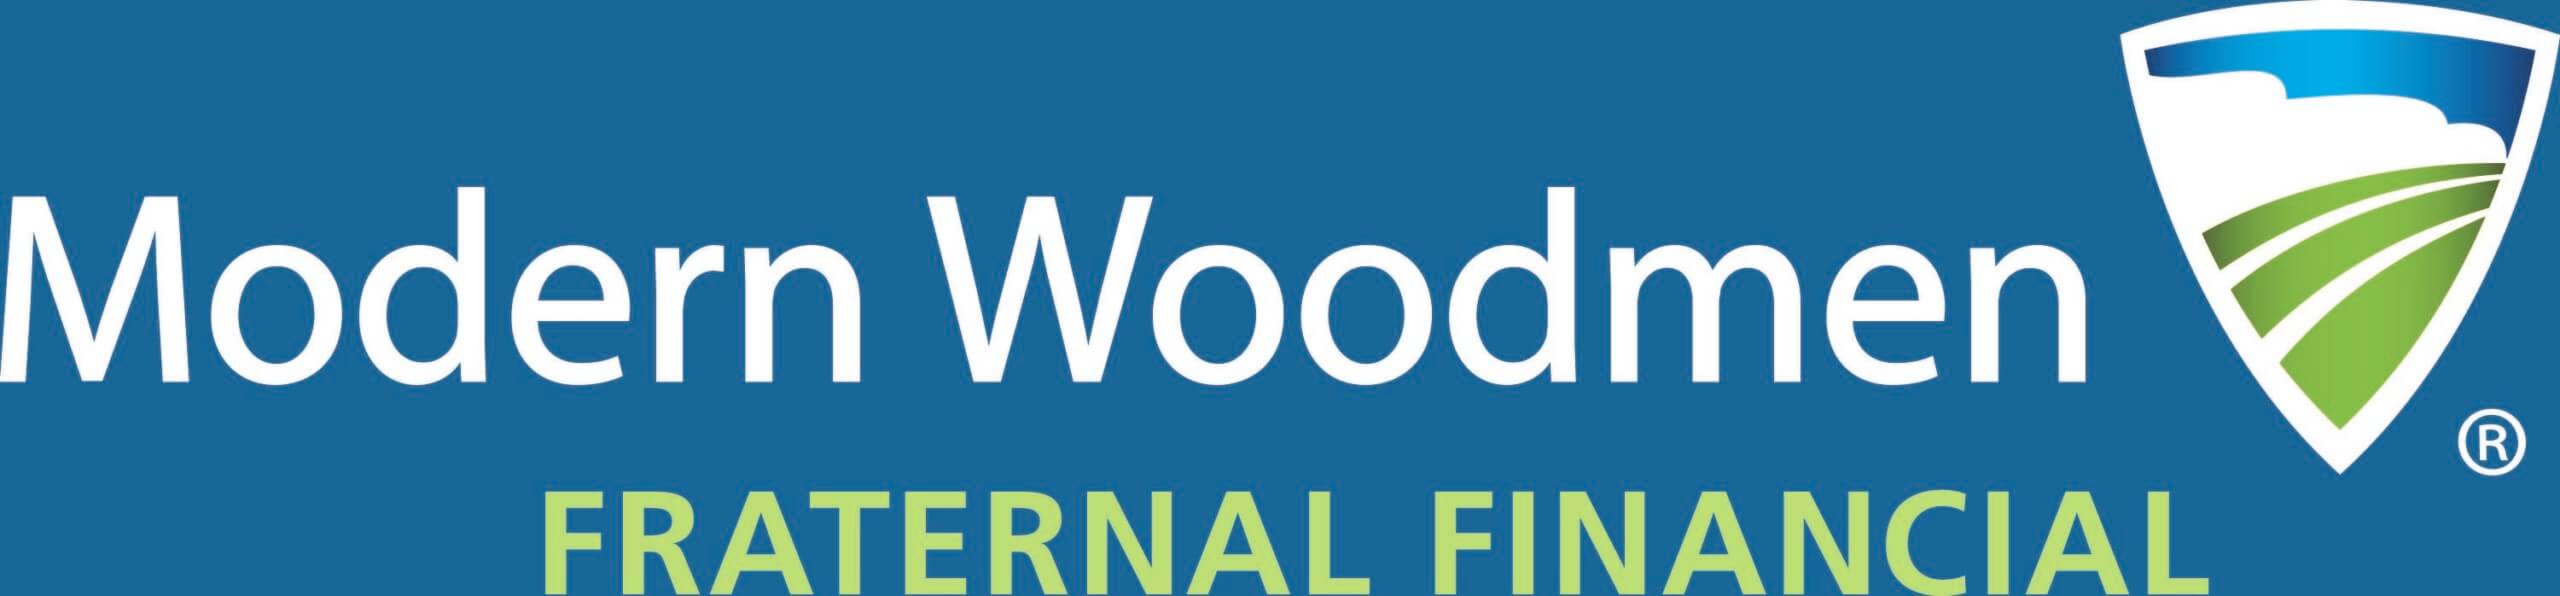 Modern Woodmen 2500 Sponsor